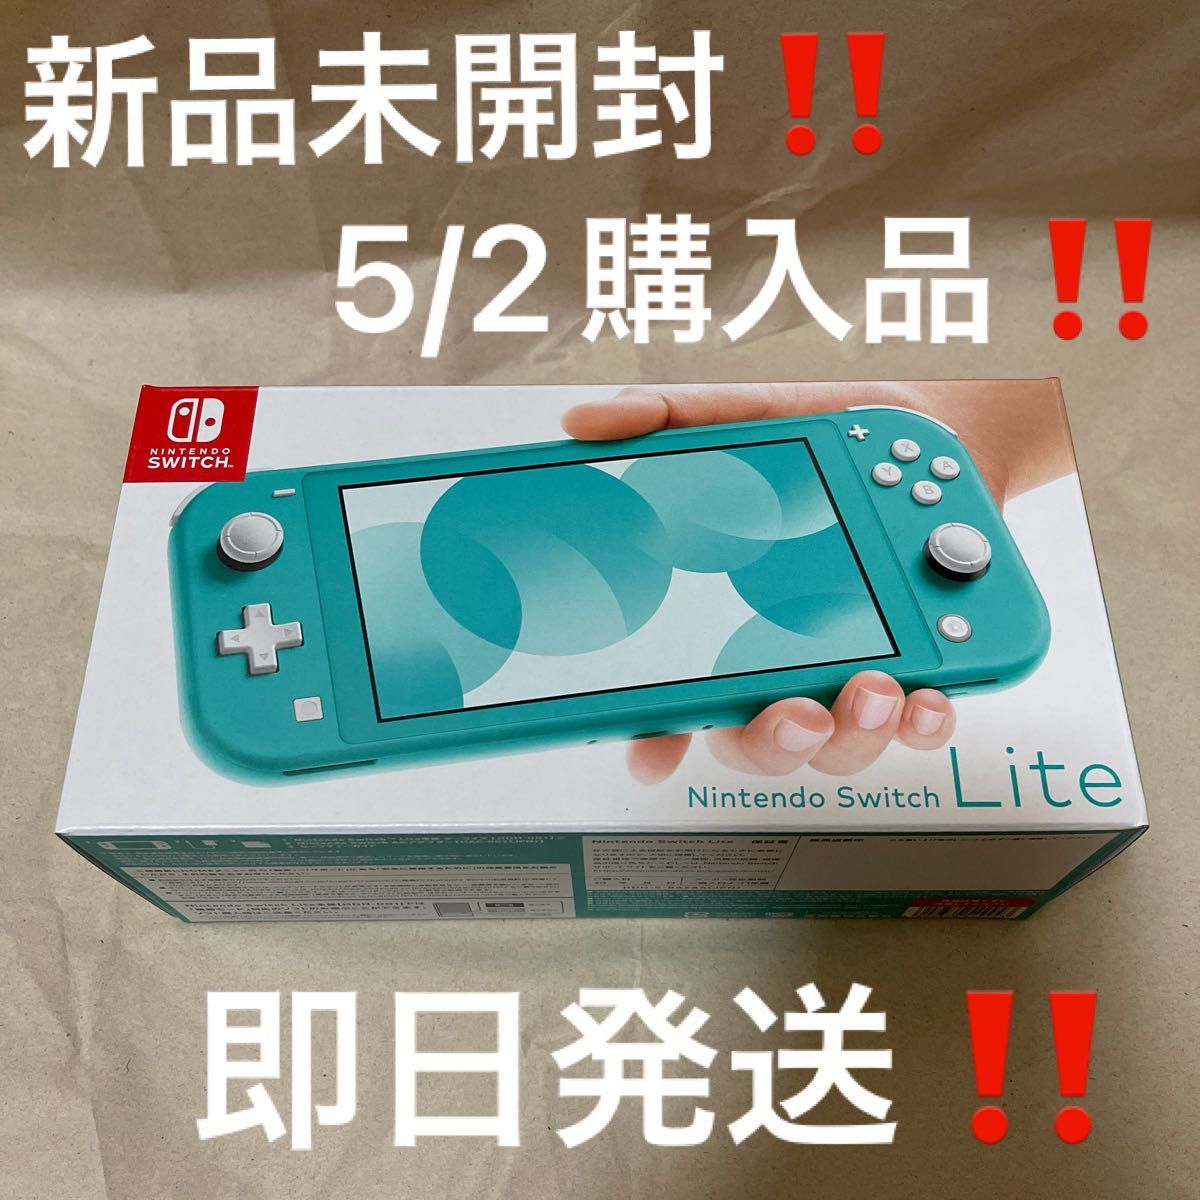 5/2購入品！新品未開封 Nintendo Switch Lite ターコイズ 店舗印無し 24時間以内発送